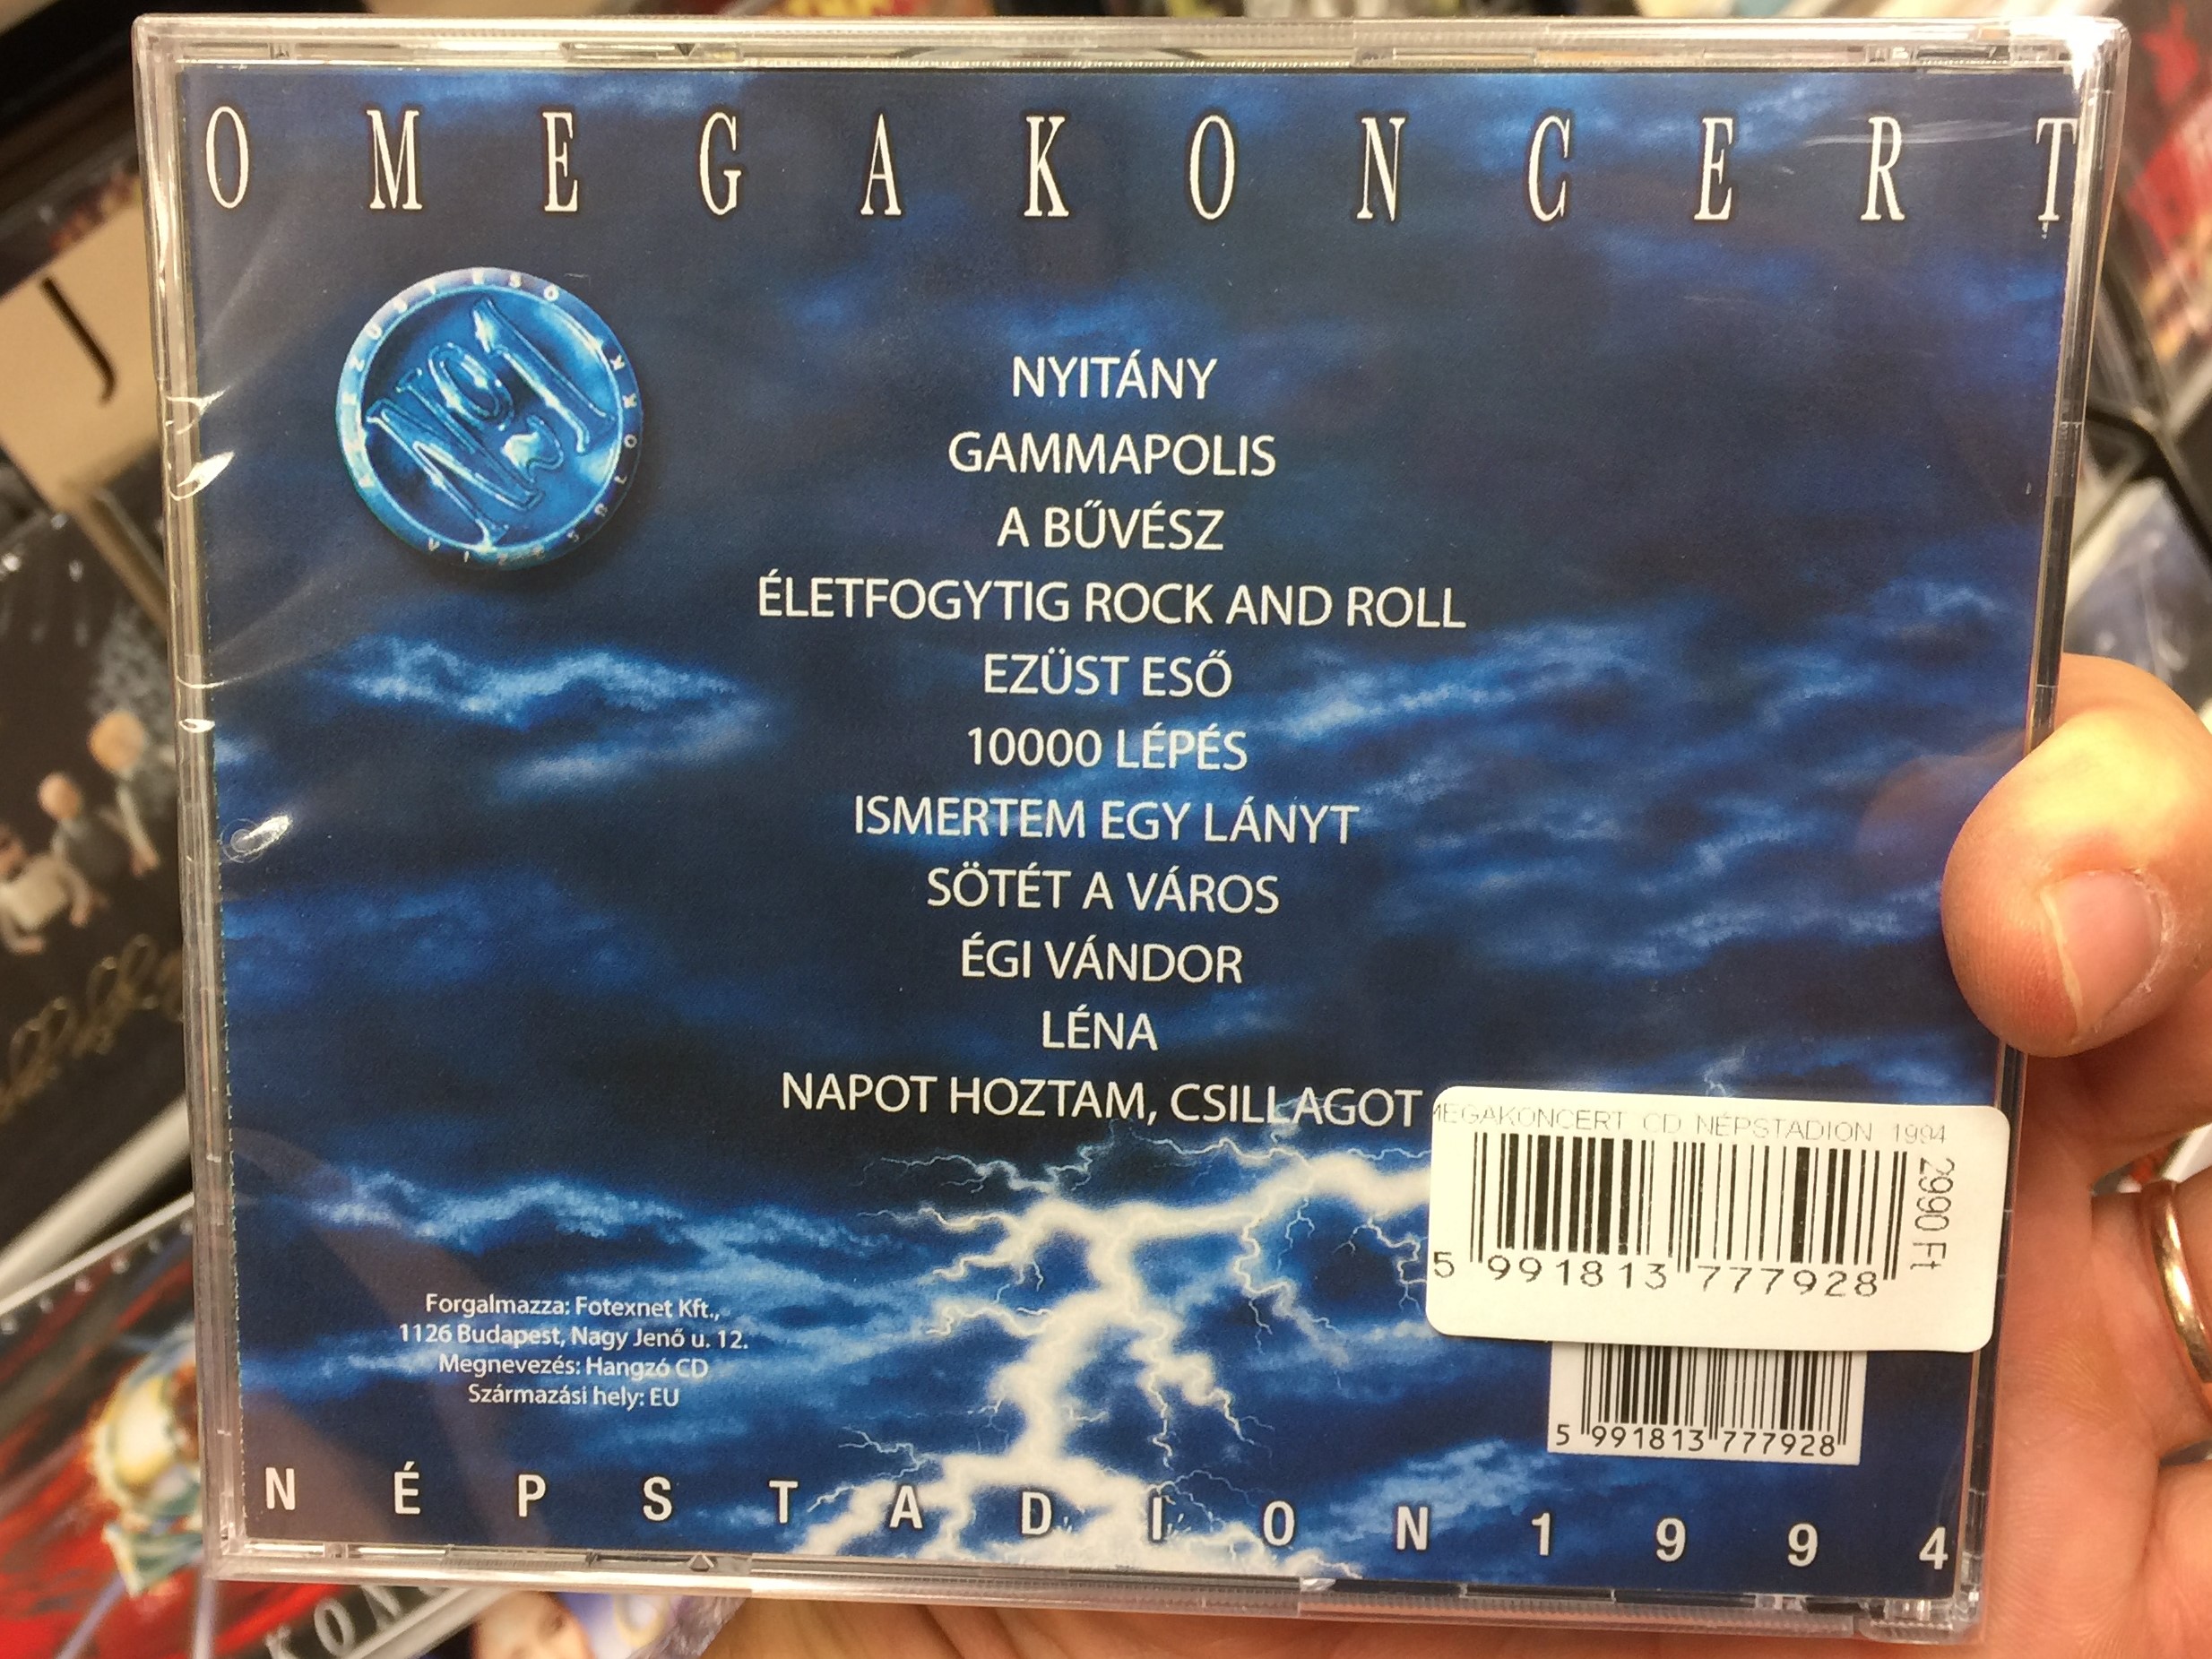 n-pstadion-1994-omegakoncert-no.-2-mega-audio-cd-5991813777928-2-.jpg